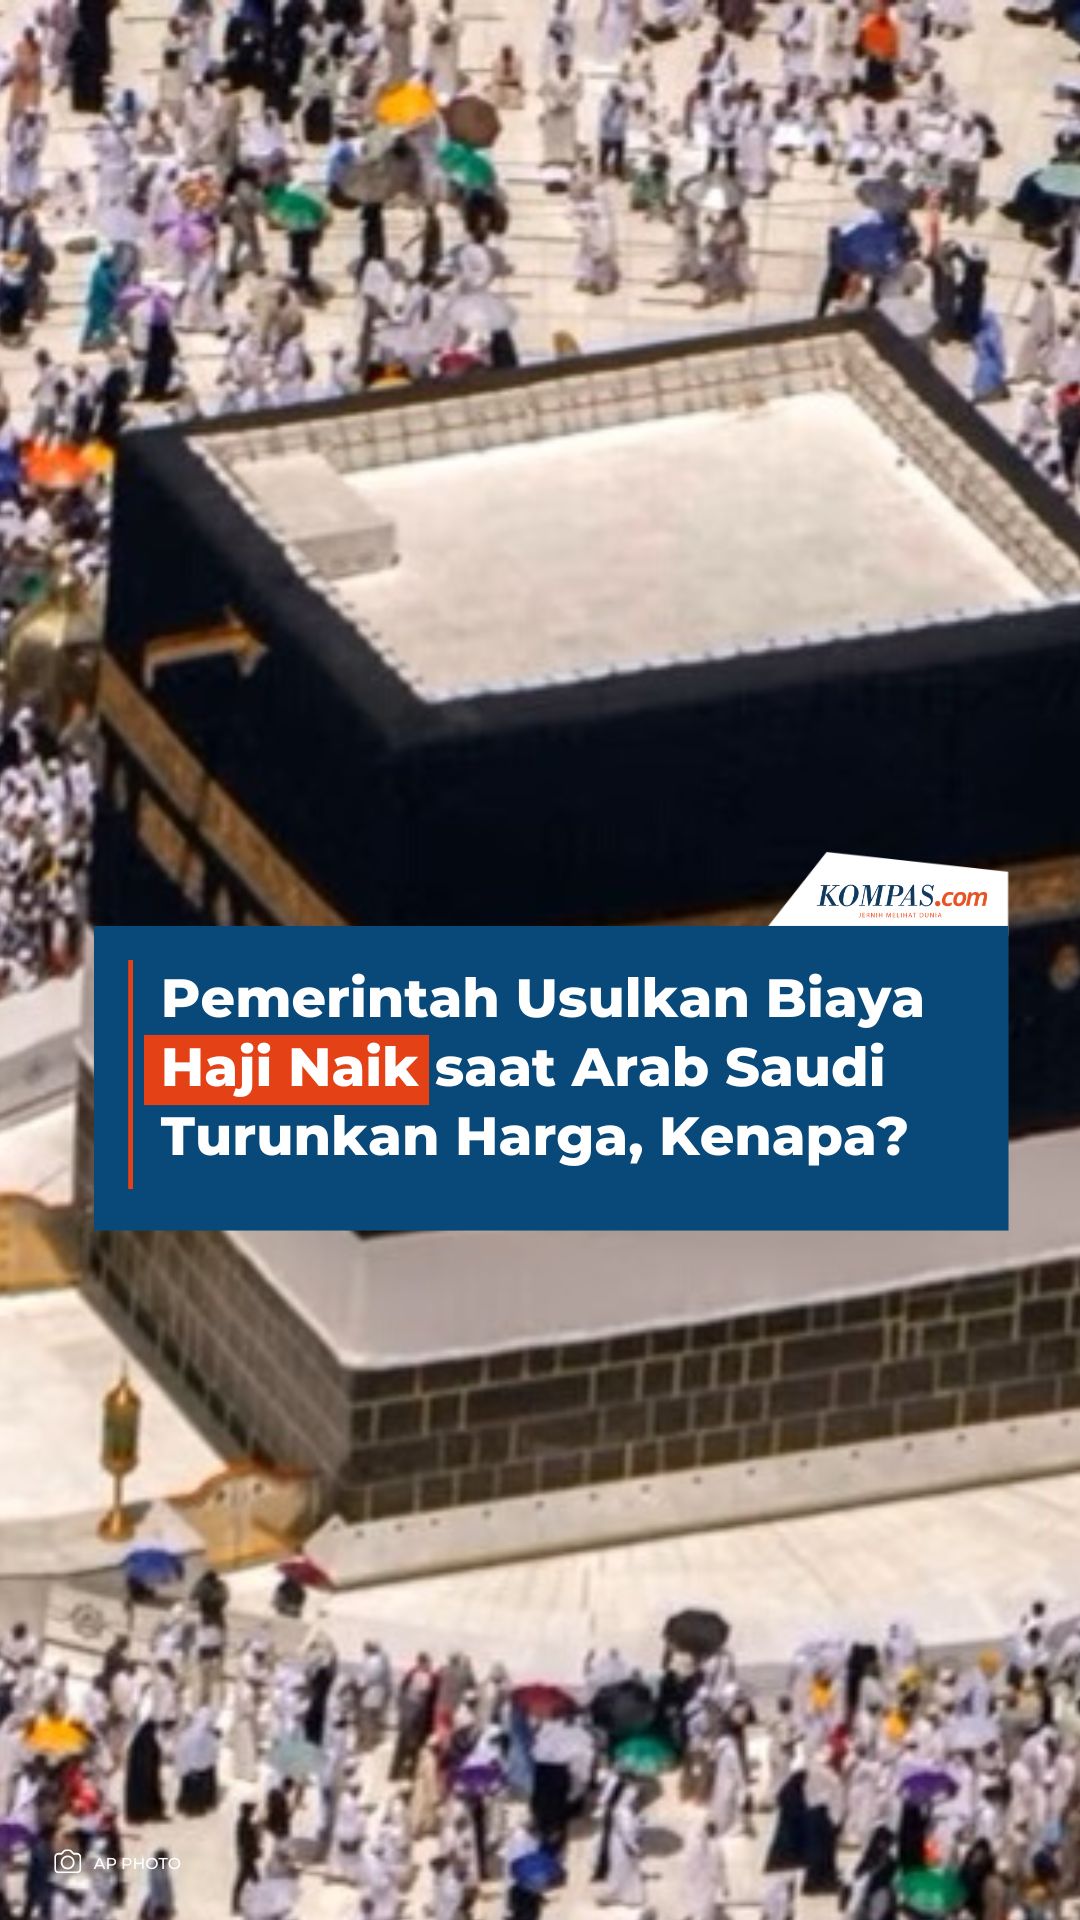 Pemerintah Usulkan Biaya Haji Naik saat Arab Saudi Turunkan Harga, Kenapa?